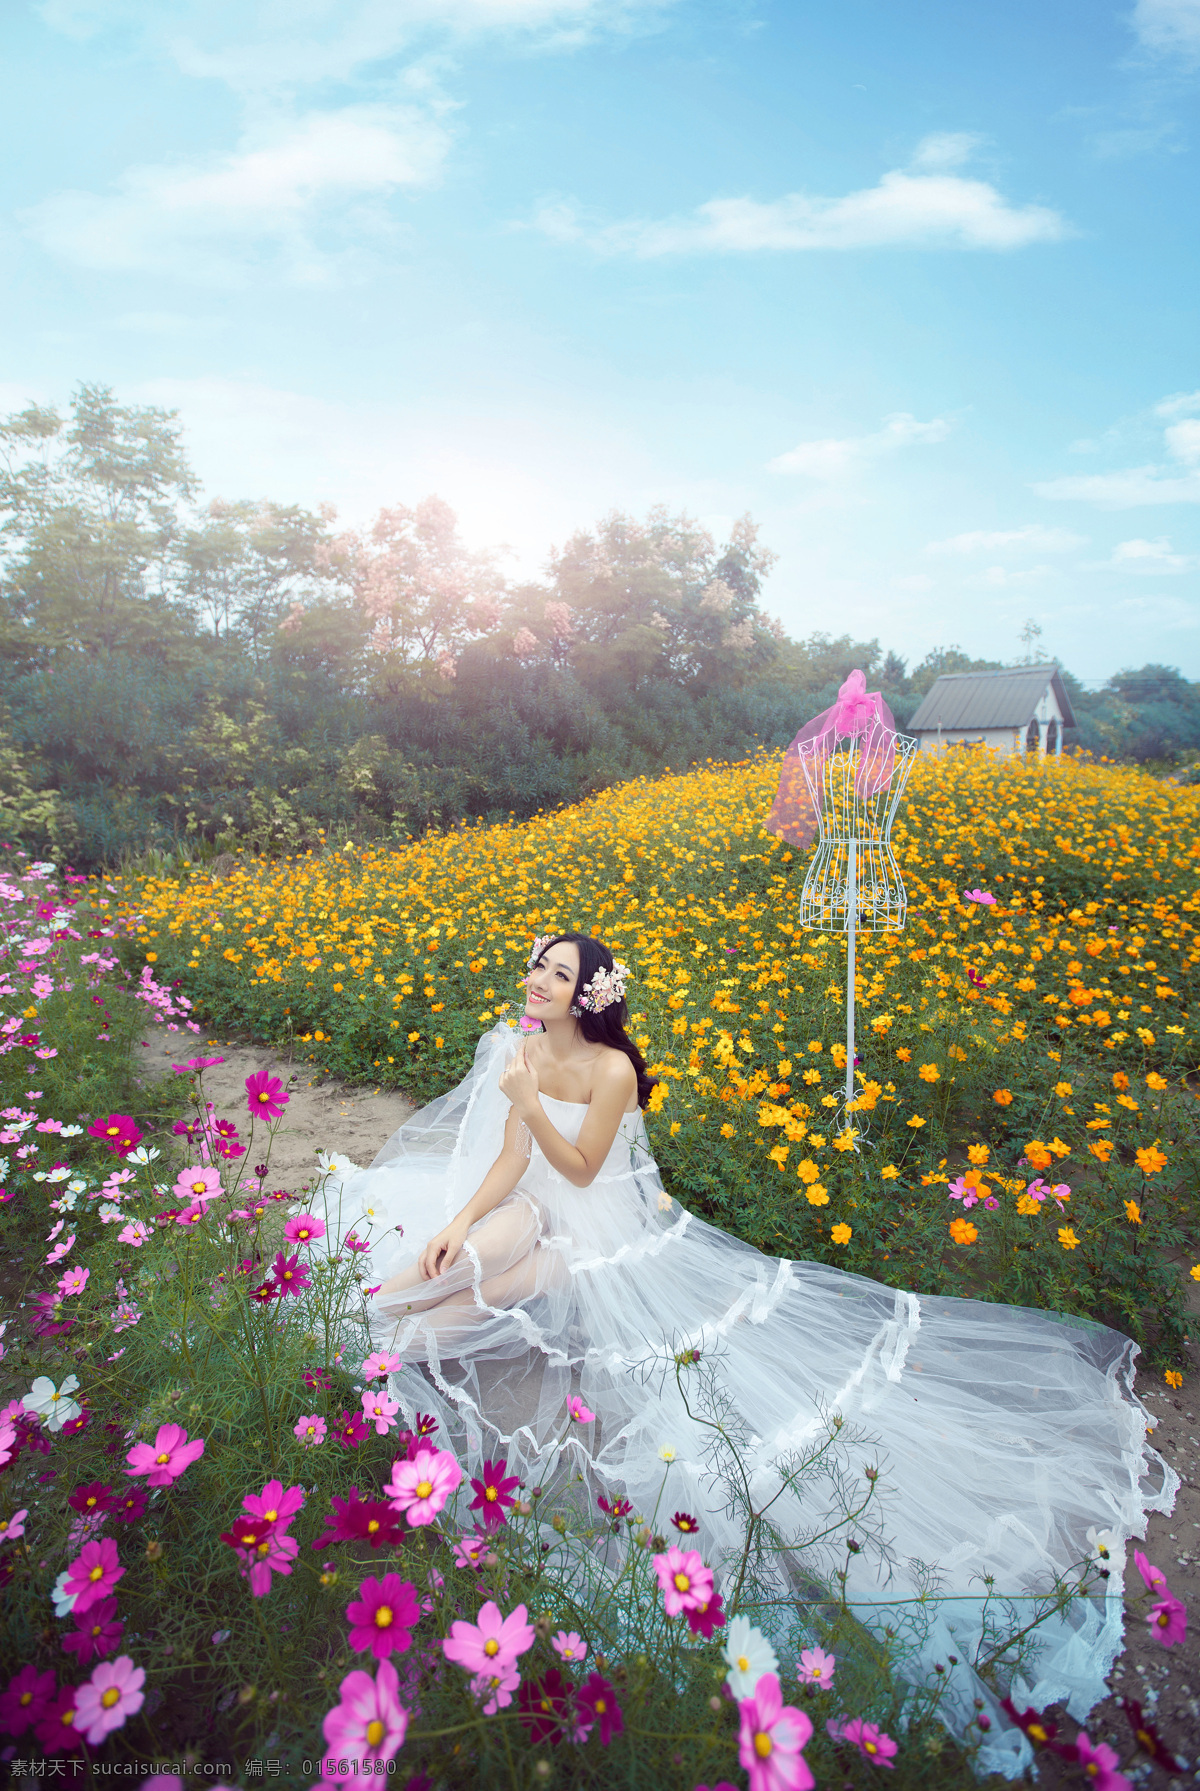 坐在 花丛 中 美丽 新娘 婚纱照 美丽新娘 时尚美女 鲜花 情侣图片 人物图片